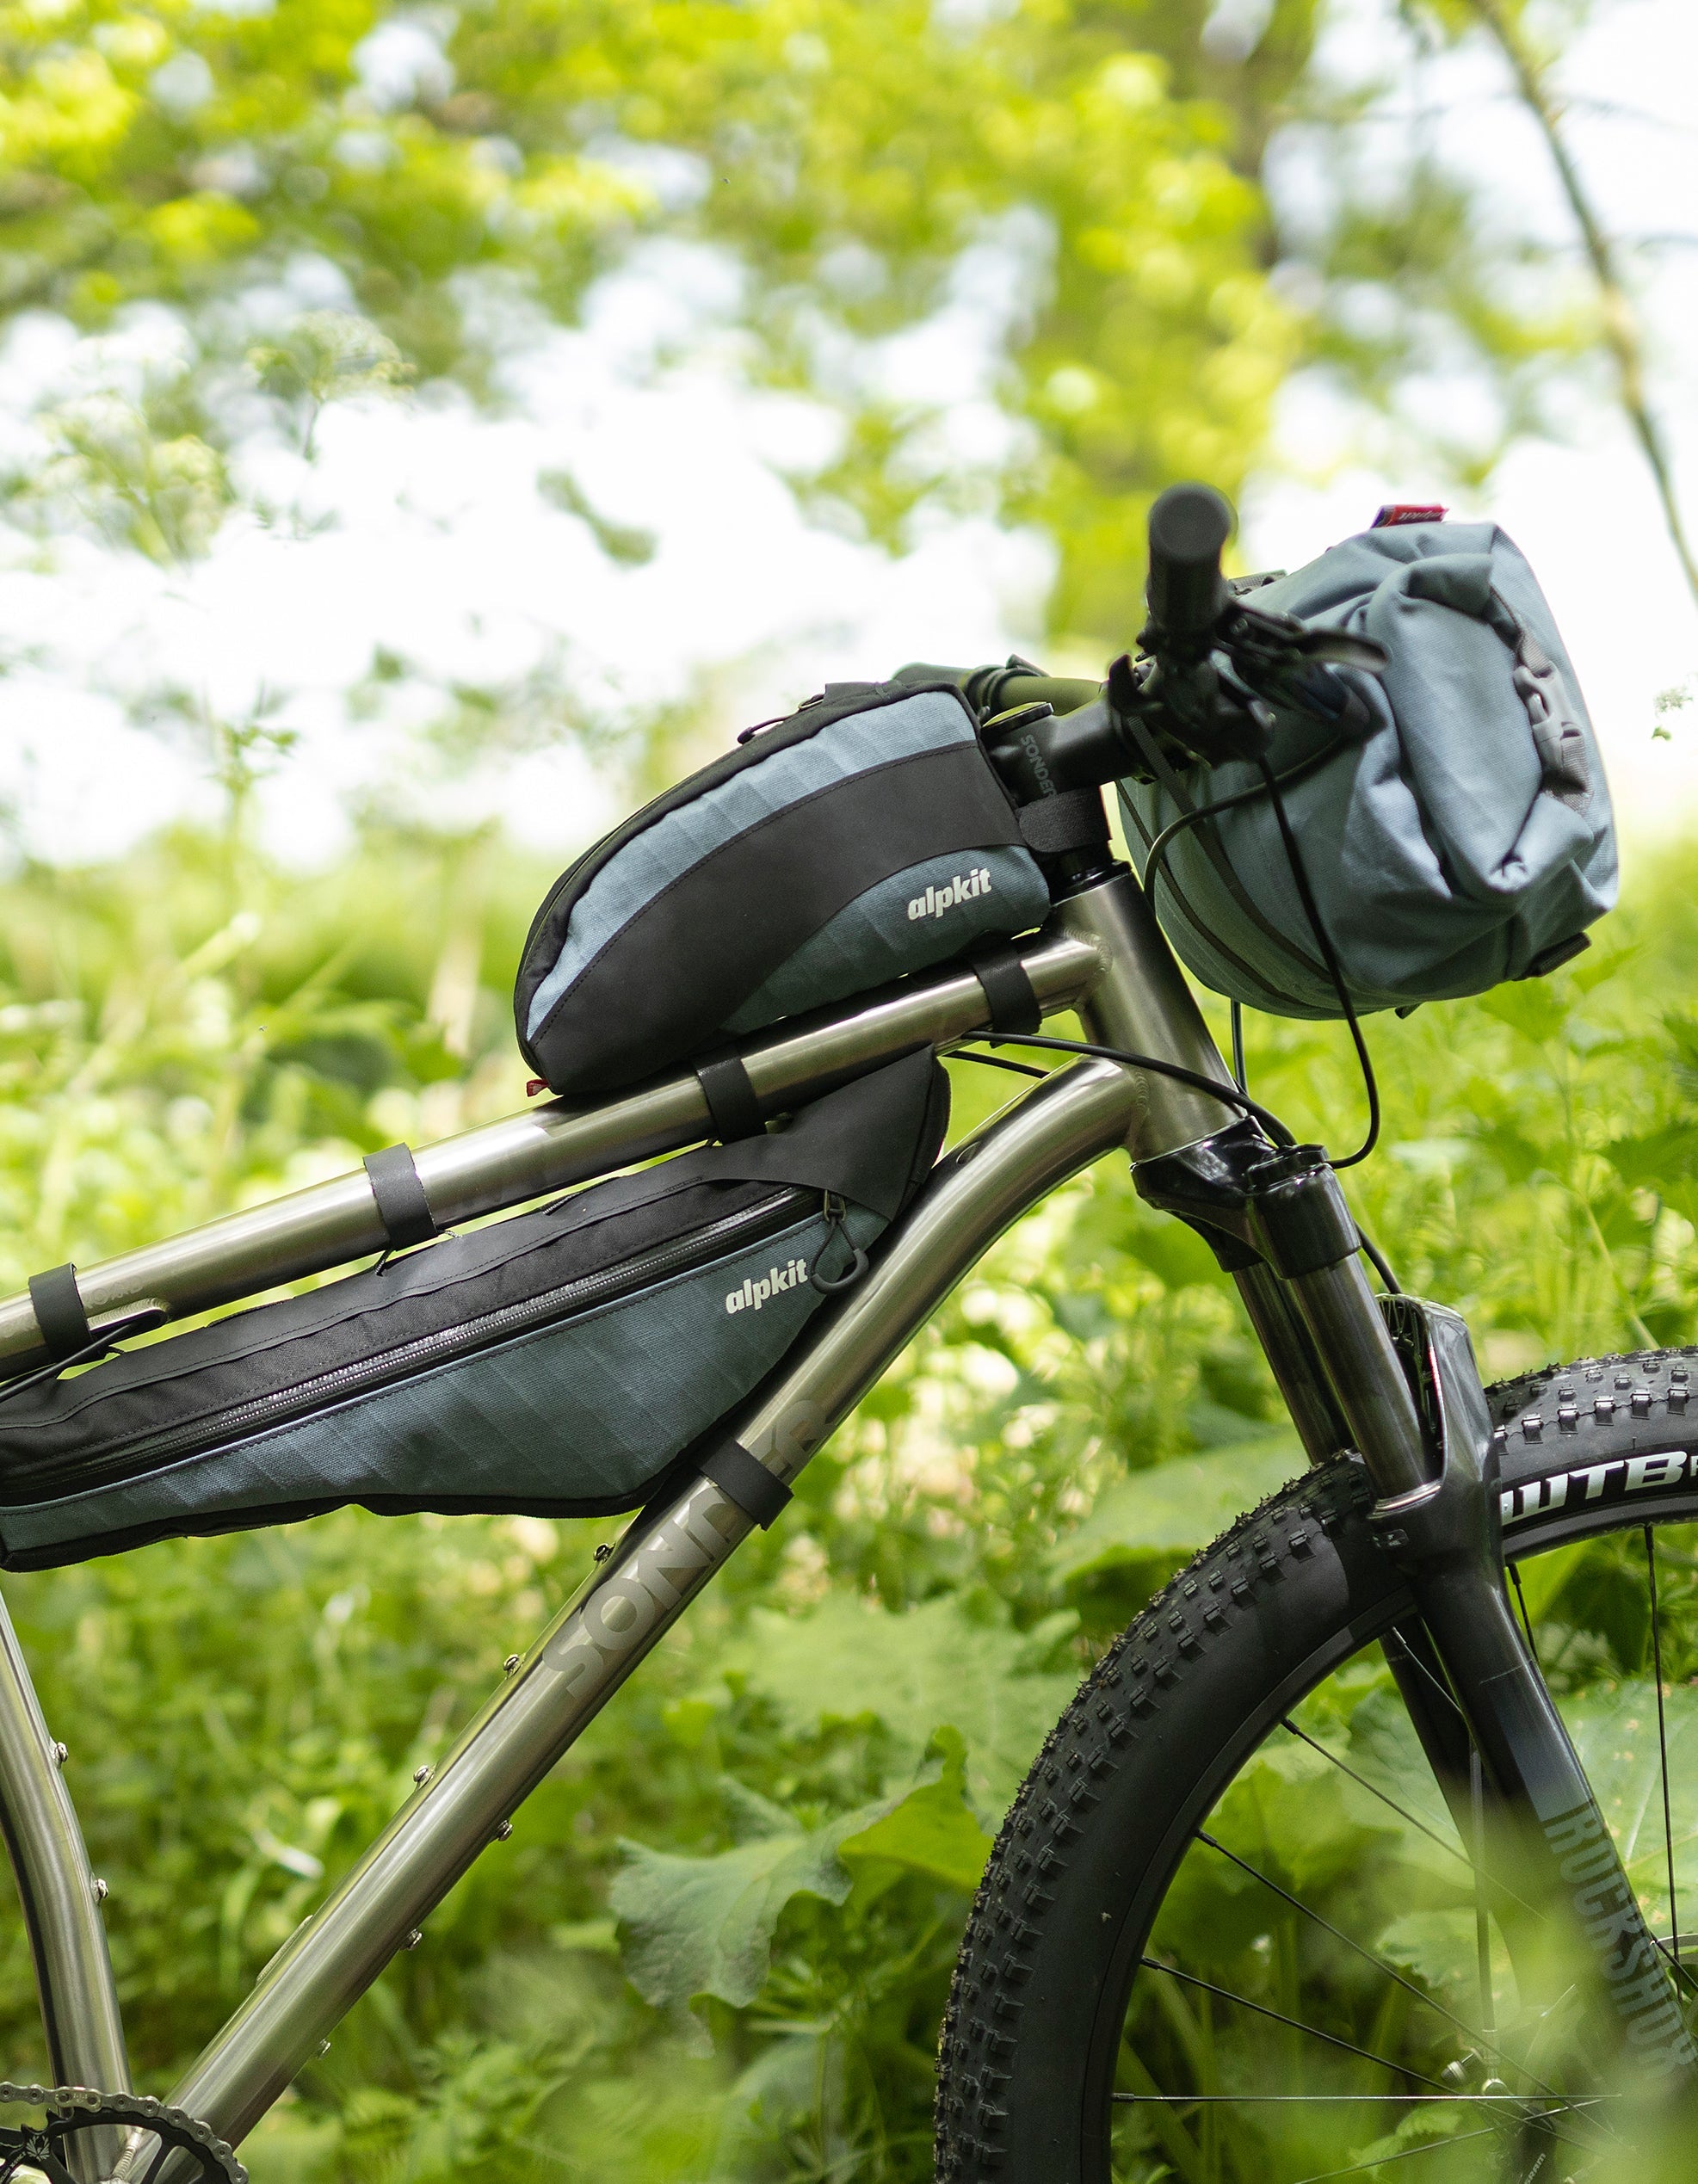 Bikpacking Gear Guide - Part One: The Bike